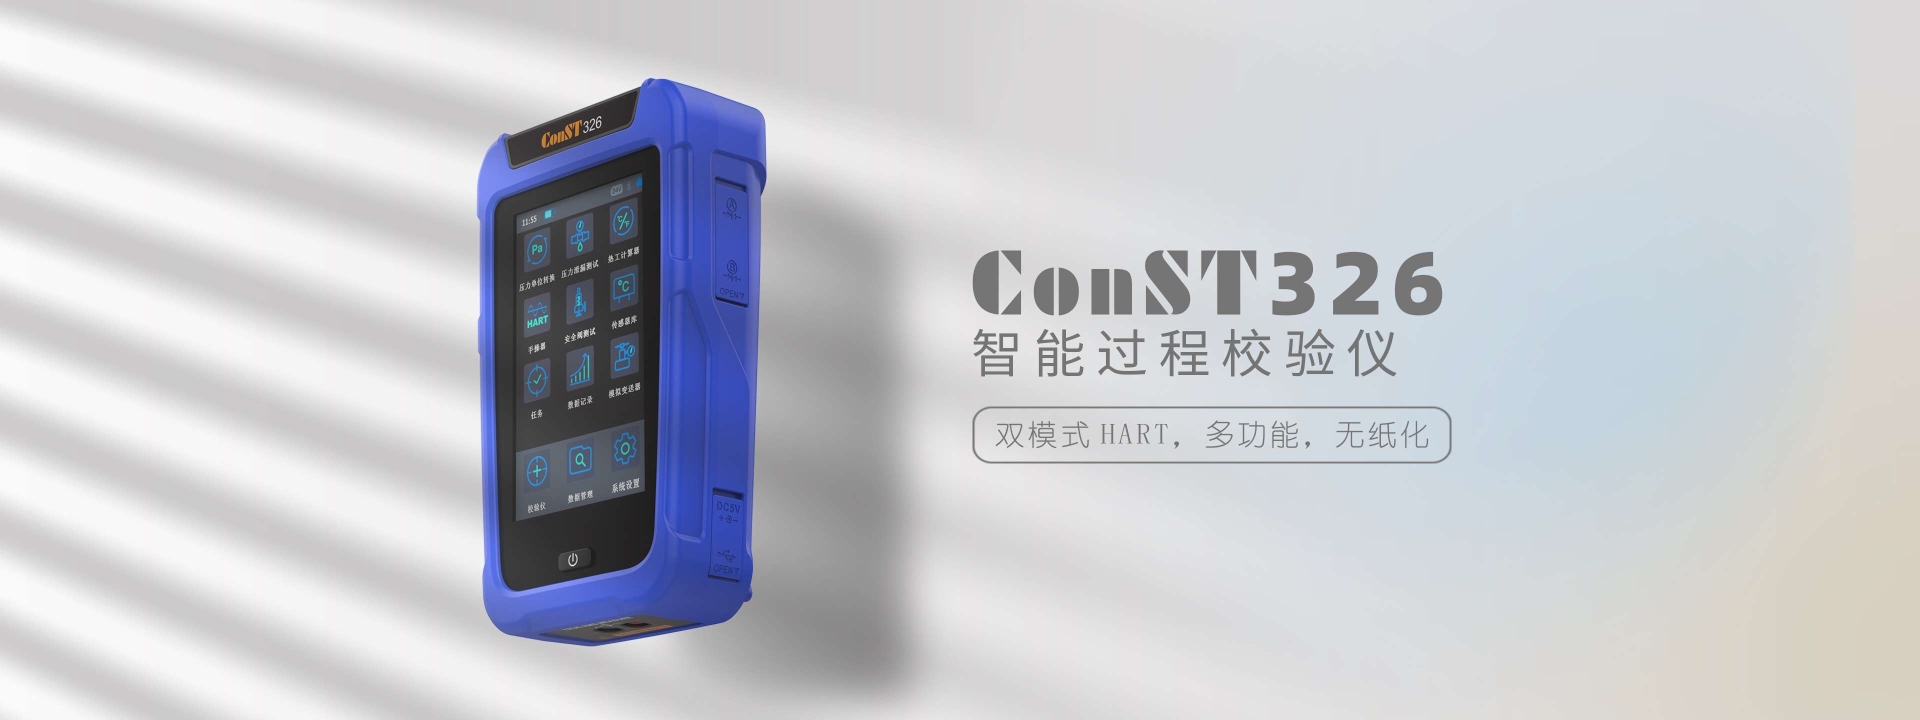 ConST326智能过程校验仪